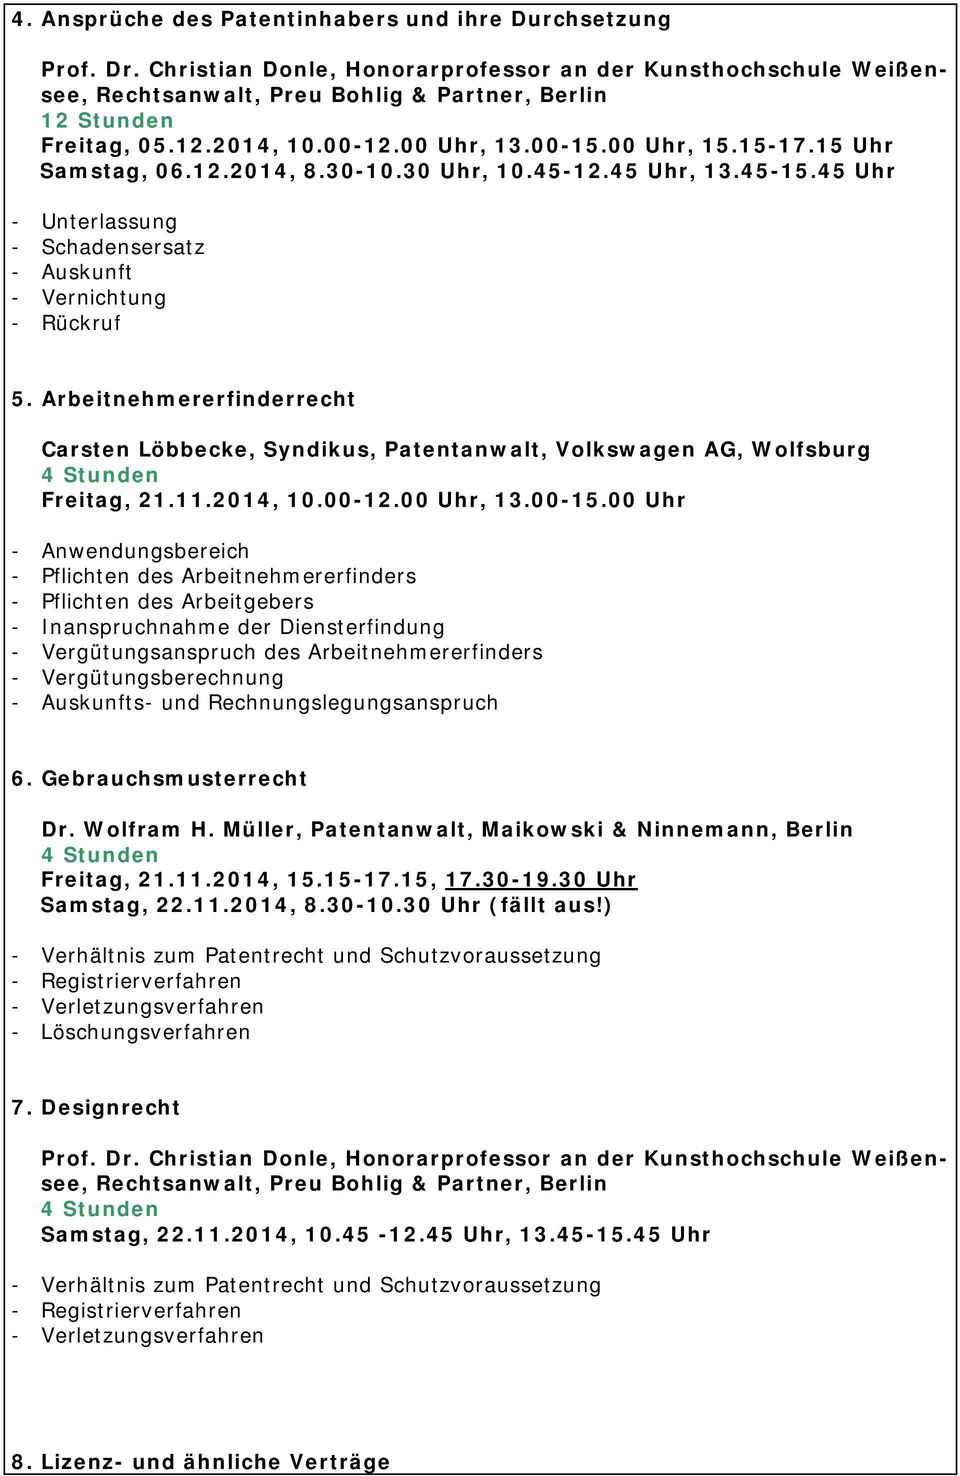 Arbeitnehmererfinderrecht Carsten Löbbecke, Syndikus, Patentanwalt, Volkswagen AG, Wolfsburg Freitag, 21.11.2014, 10.00-12.00 Uhr, 13.00-15.